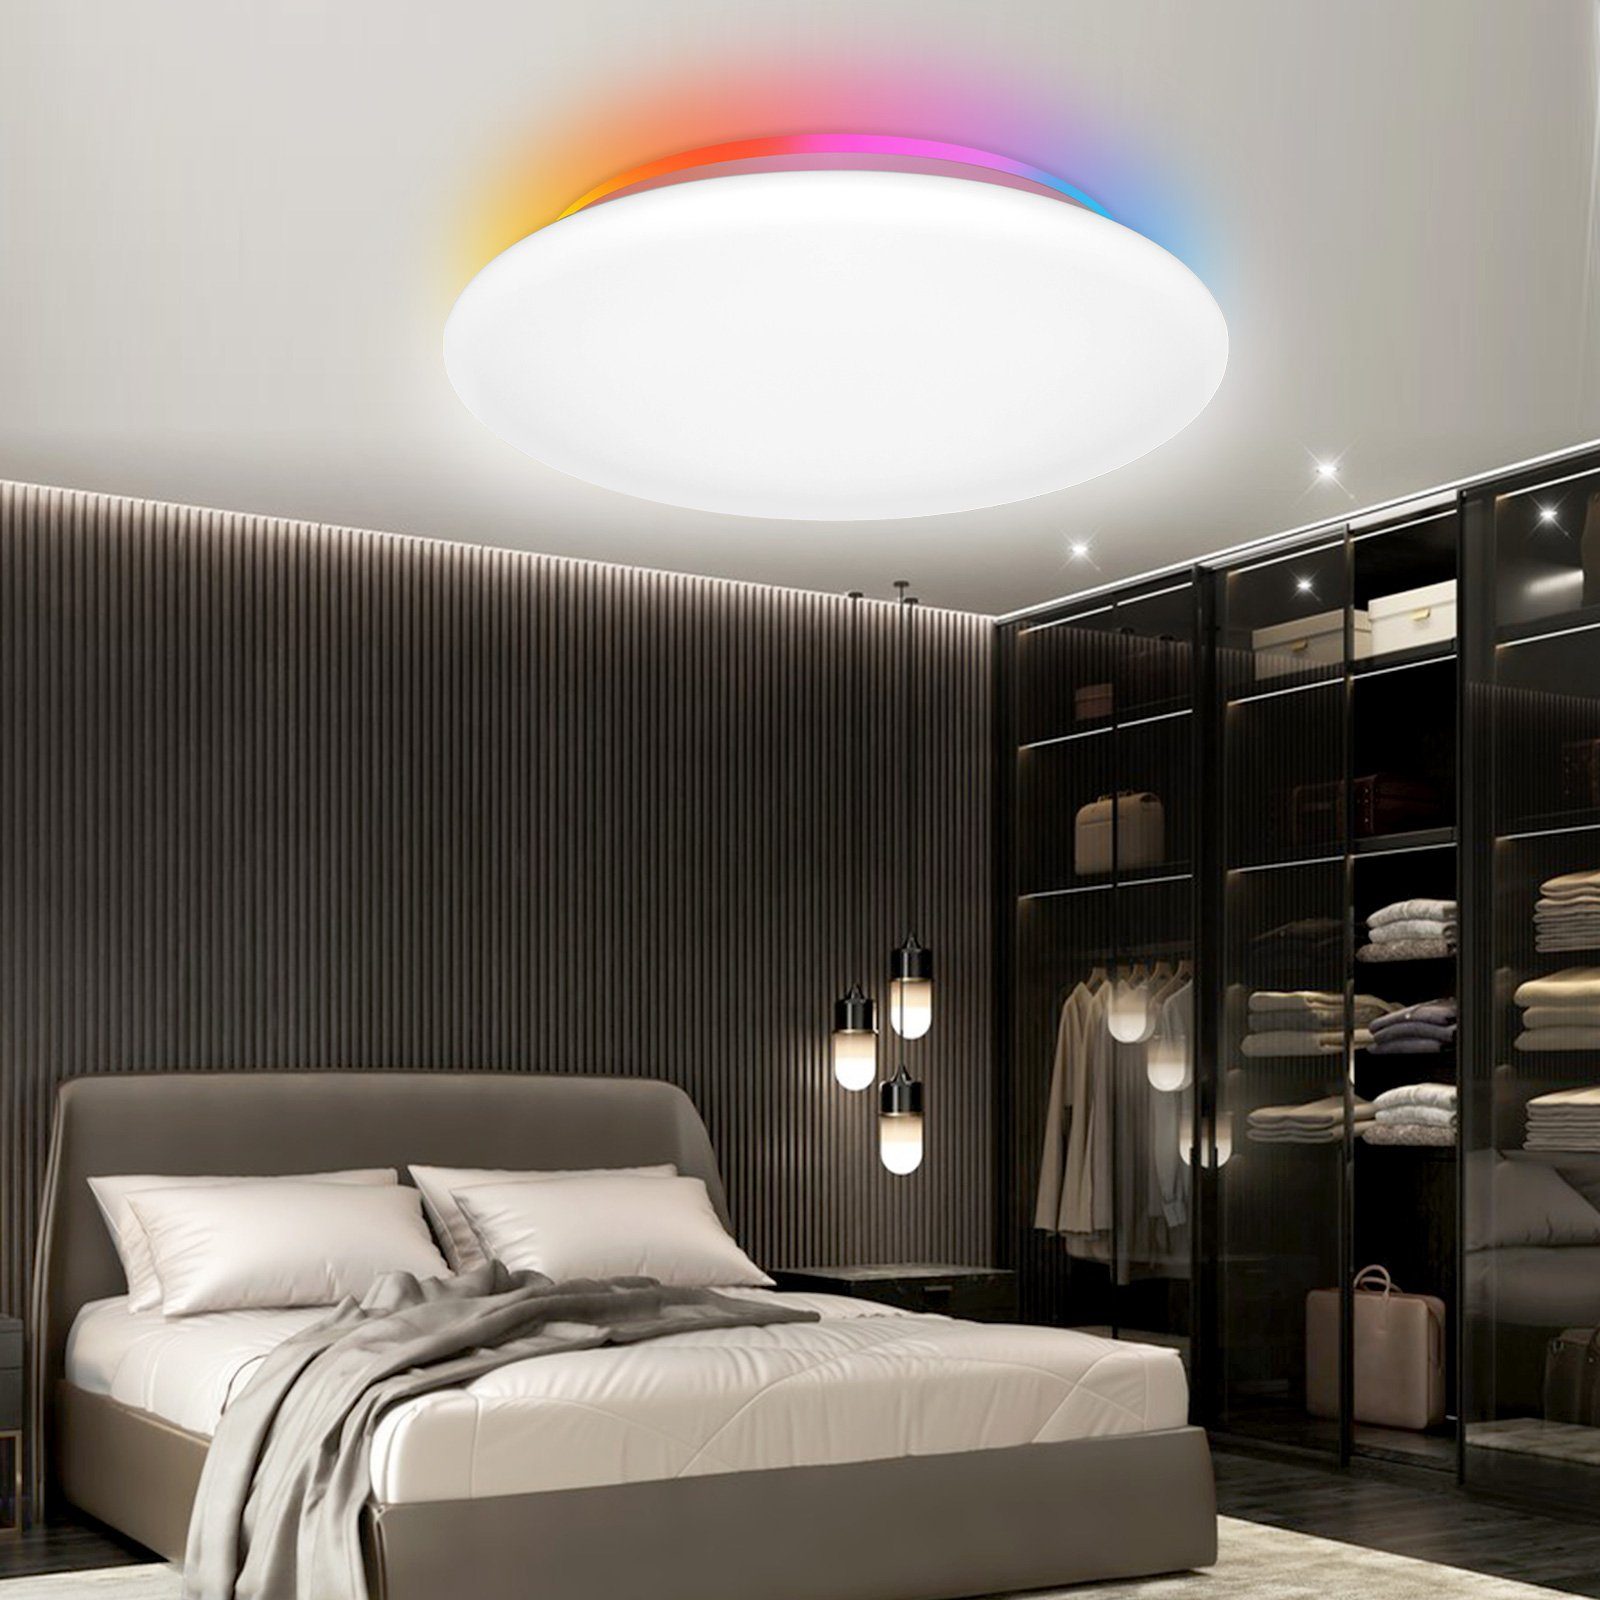 Rosnek LED Deckenleuchte Smart, Flush Mount, 28W, dimmbar, RGB, für  Schlafzimmer Wohnzimmer, RGB-Vollfarbe (16 Millionen Arten der  Farbeinstellung) + CCT-Farbtemperatur (2700K-6500K), Fernbedienung /Sprachsteuerung